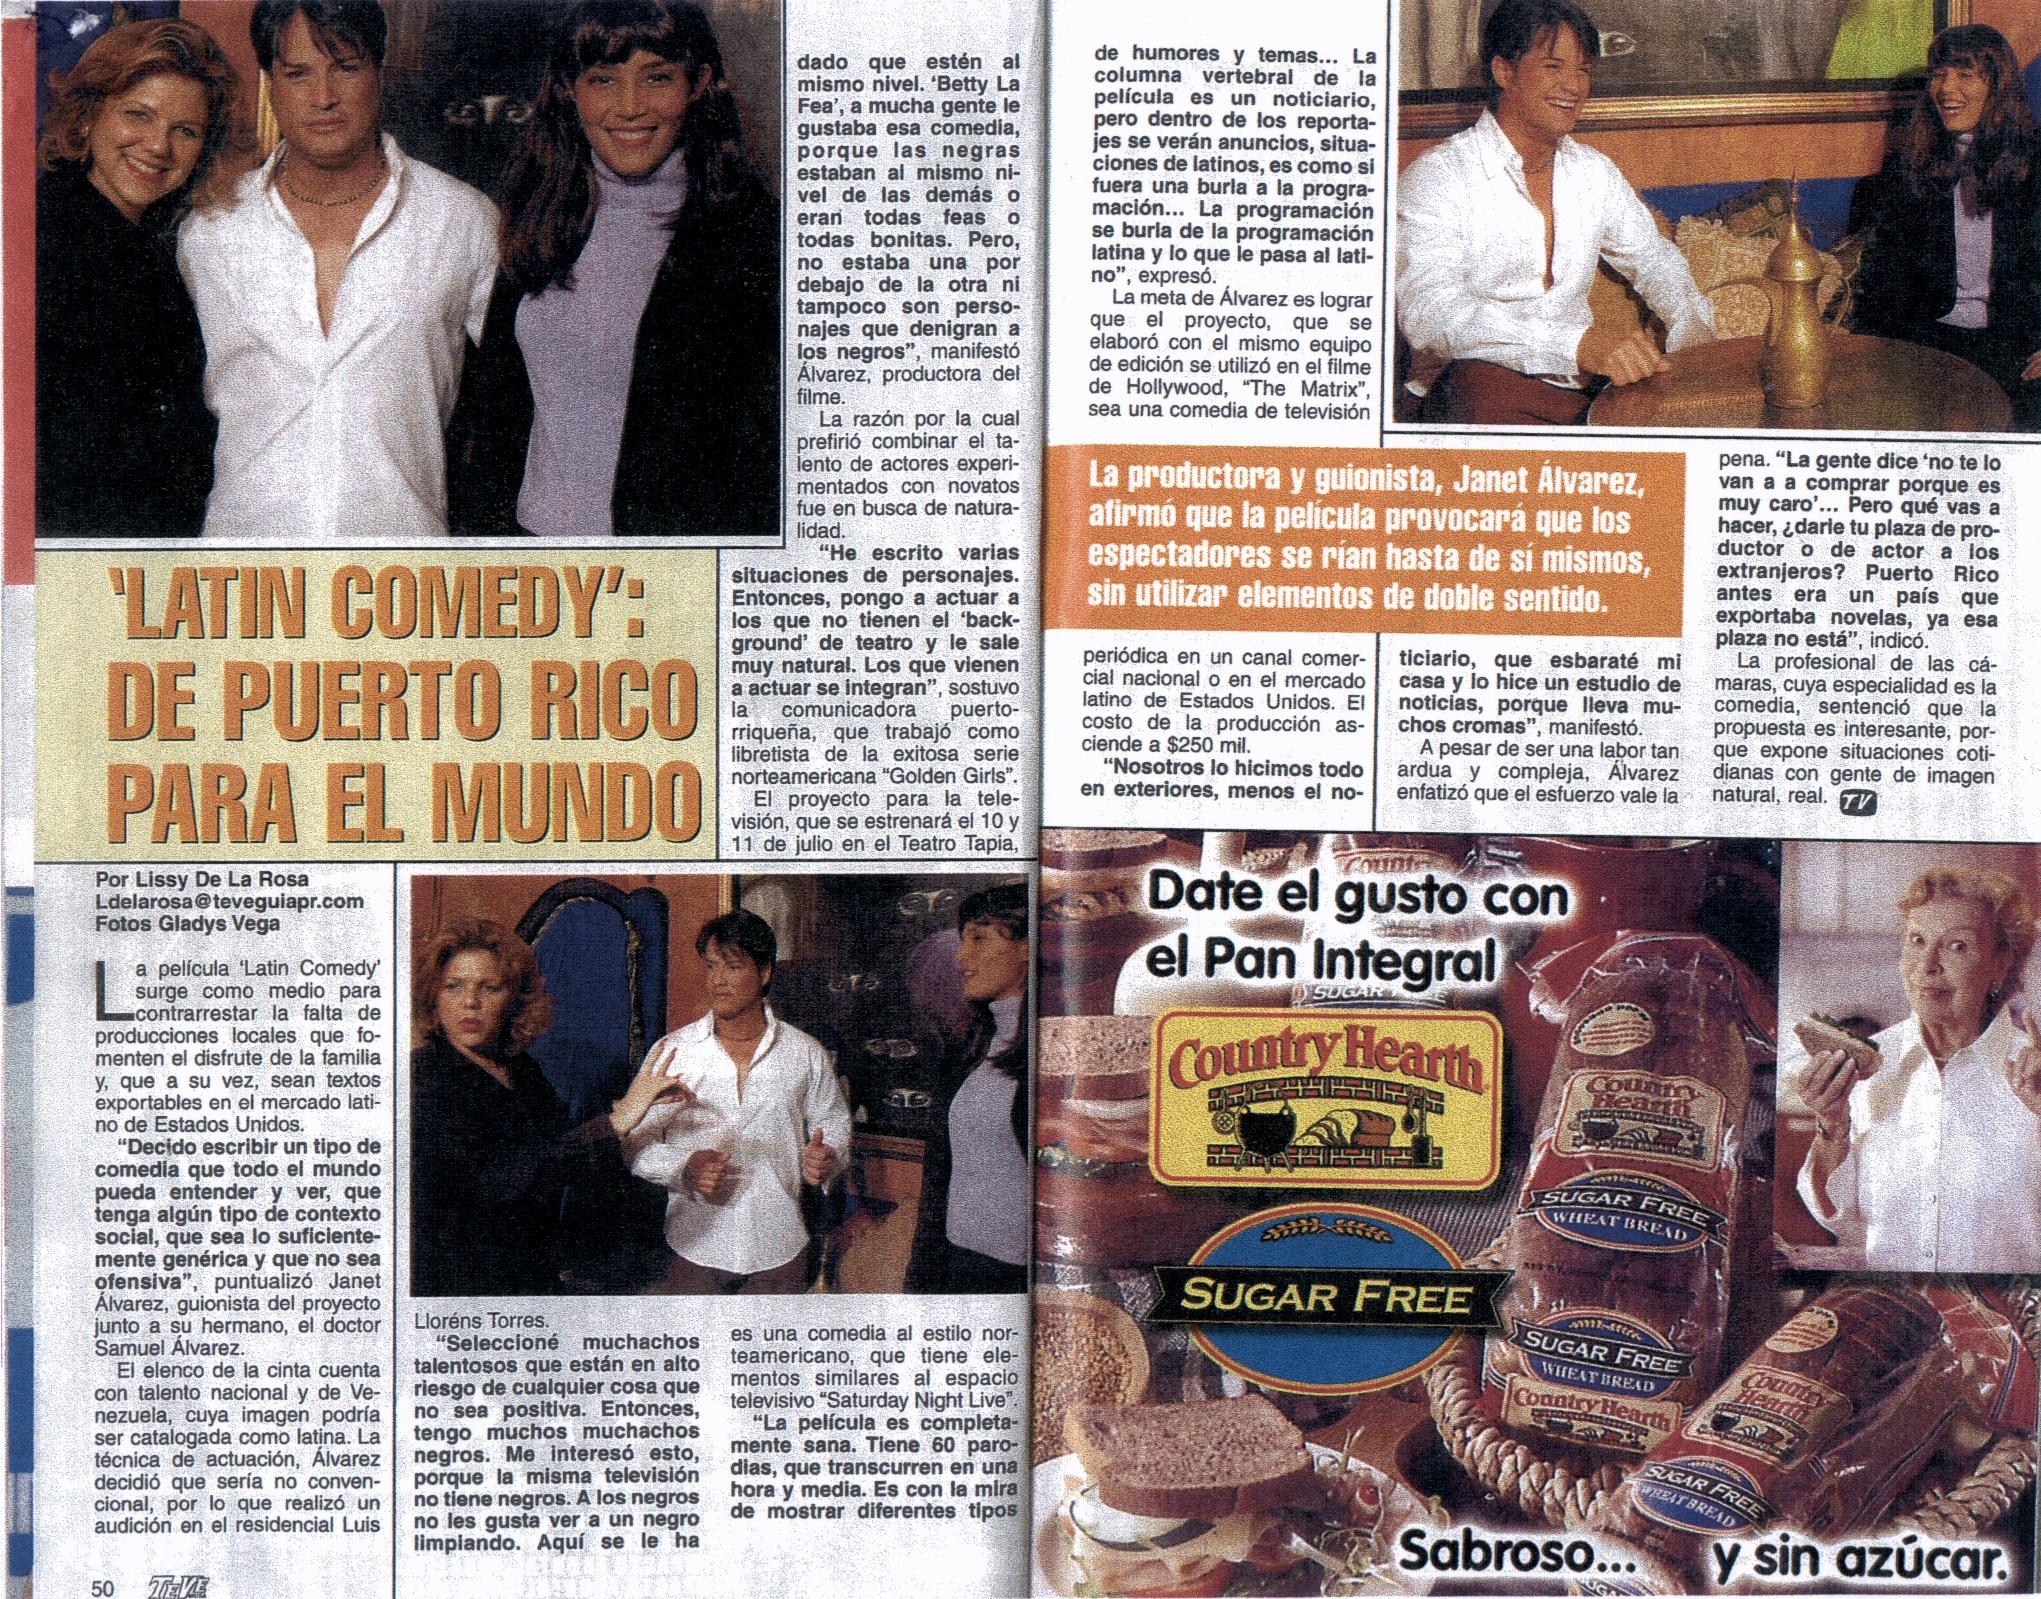 Janet Alvarez Directora y Cándido Torres, Mr. Puerto Rico Model 2001, TV GUIA